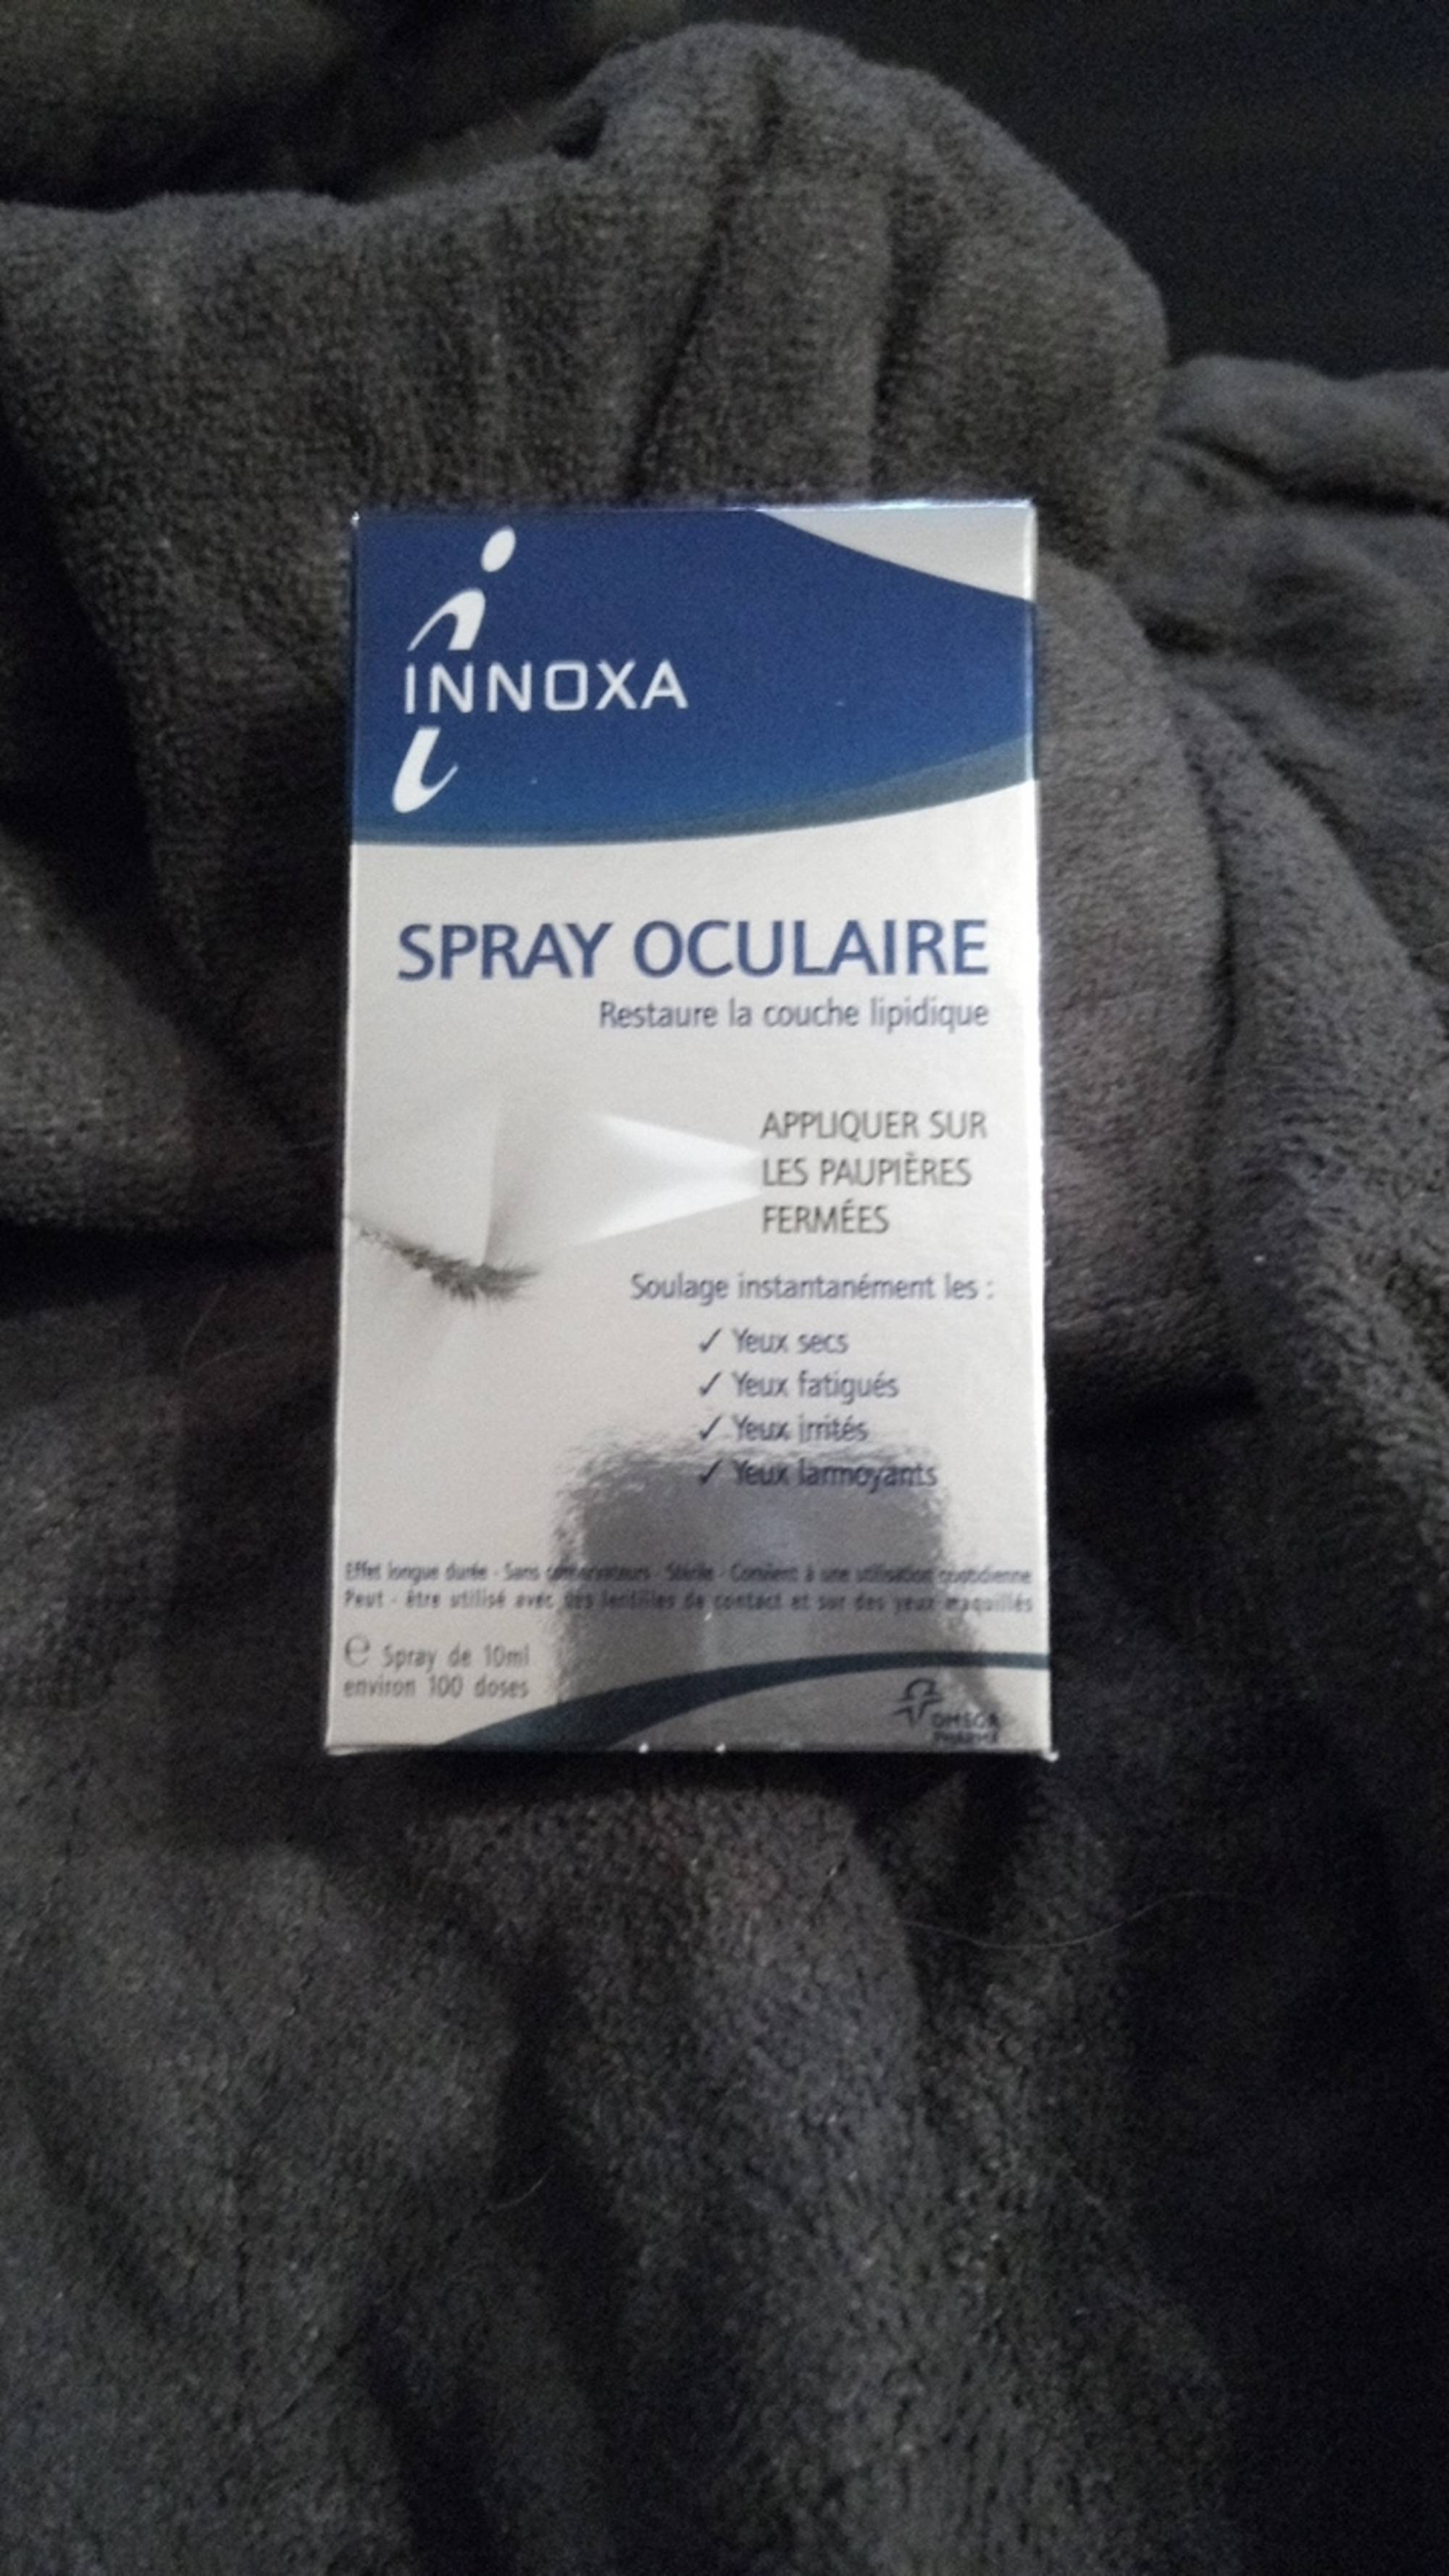 INNOXA - Spray oculaire appliquer sur les paupières fermées